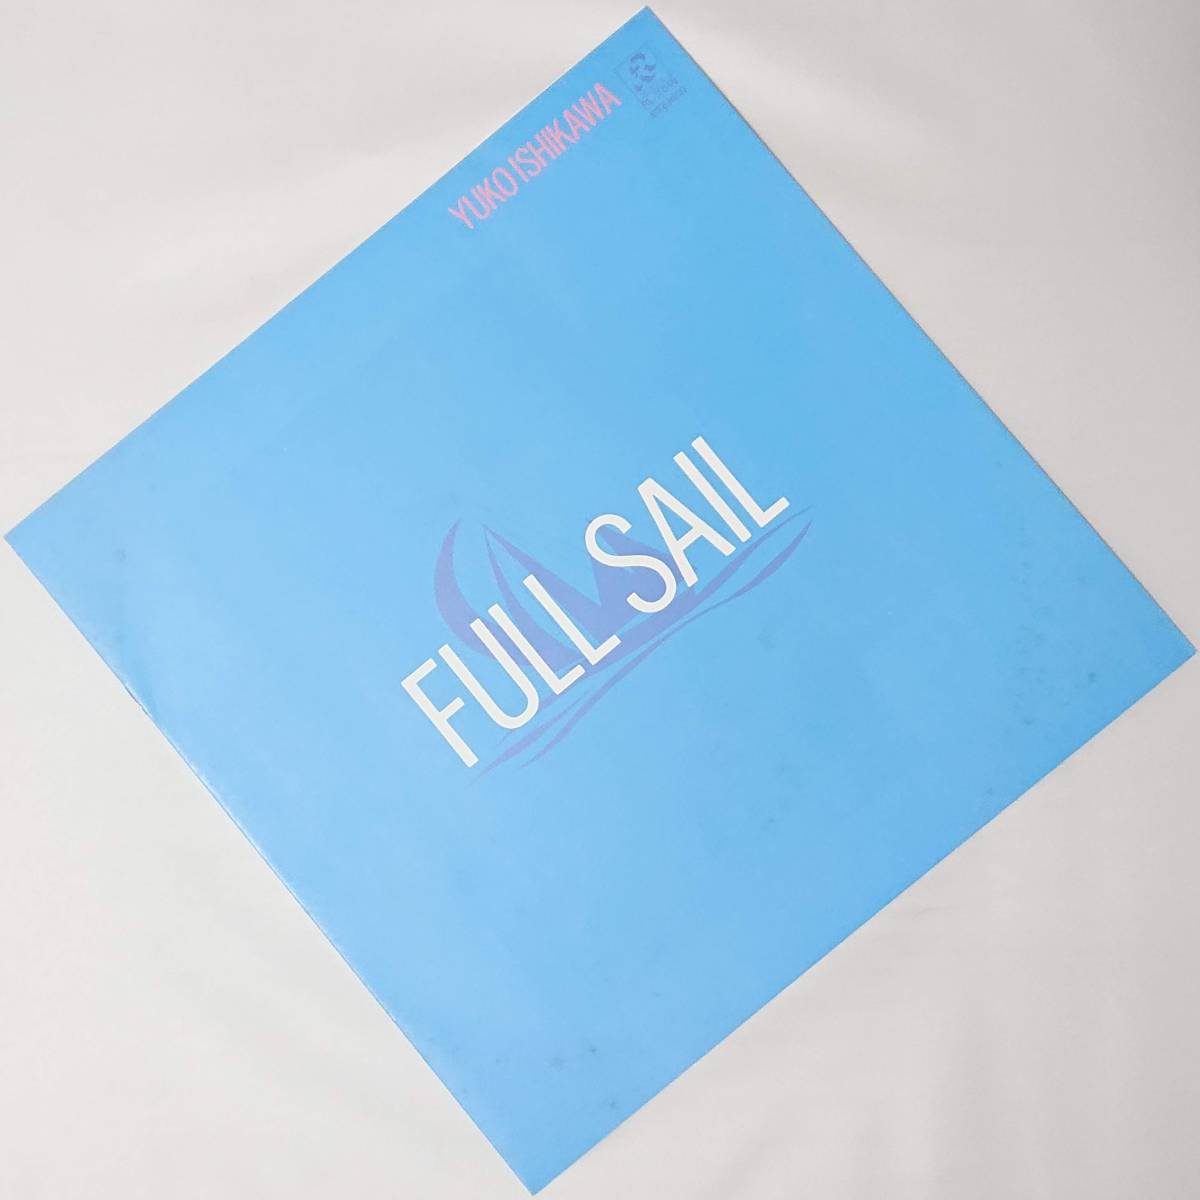 石川優子 : FULL SAIL フルセイル 帯付き 国内盤 中古 アナログ LPレコード盤 1982年 RL-3018 M2-KDO-590_画像7